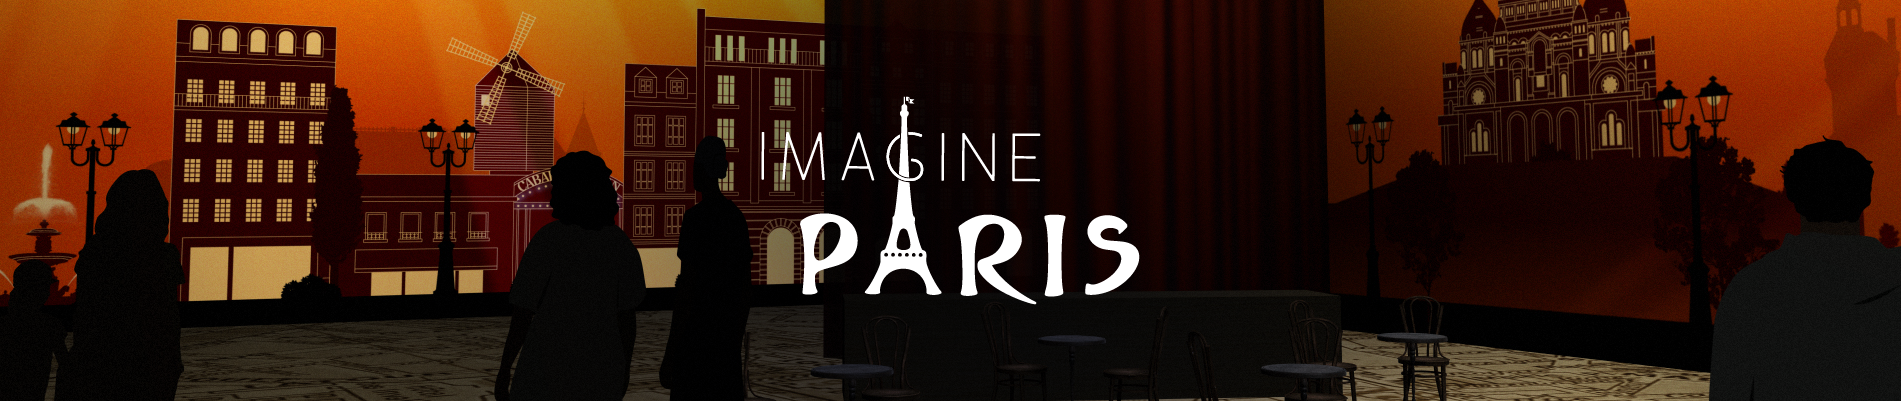 Imagine Paris immersive exhibition